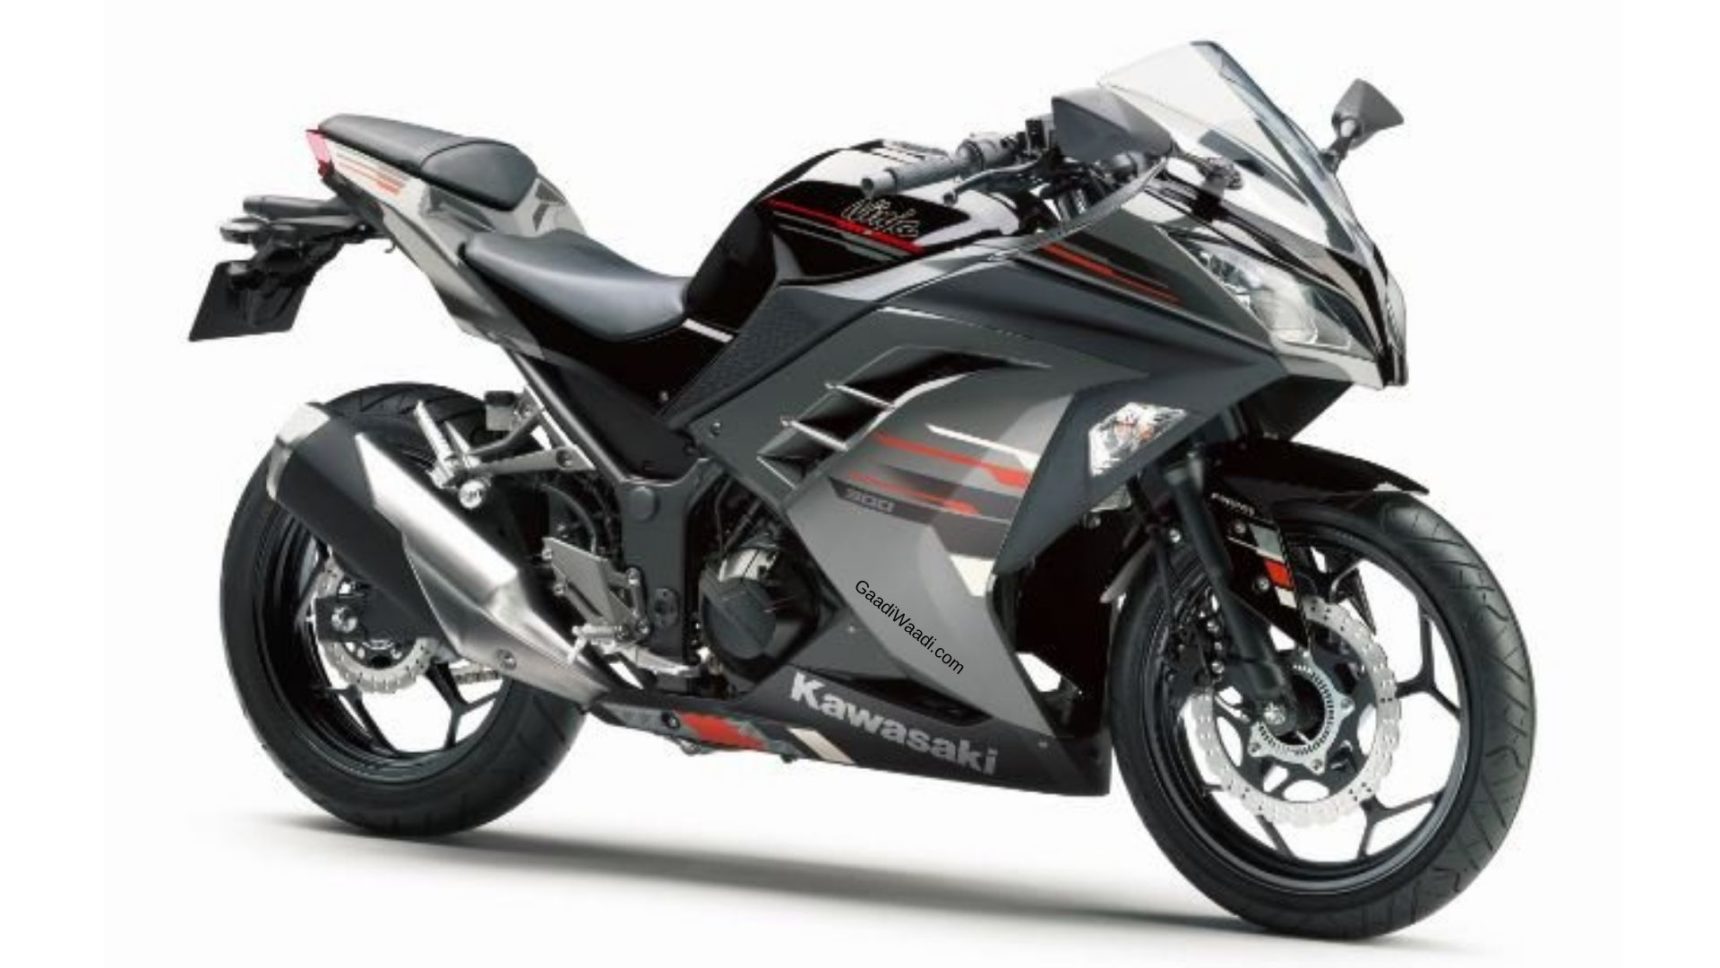 Kawasaki Introduces Two New Colour Option For The 2019 Ninja 300